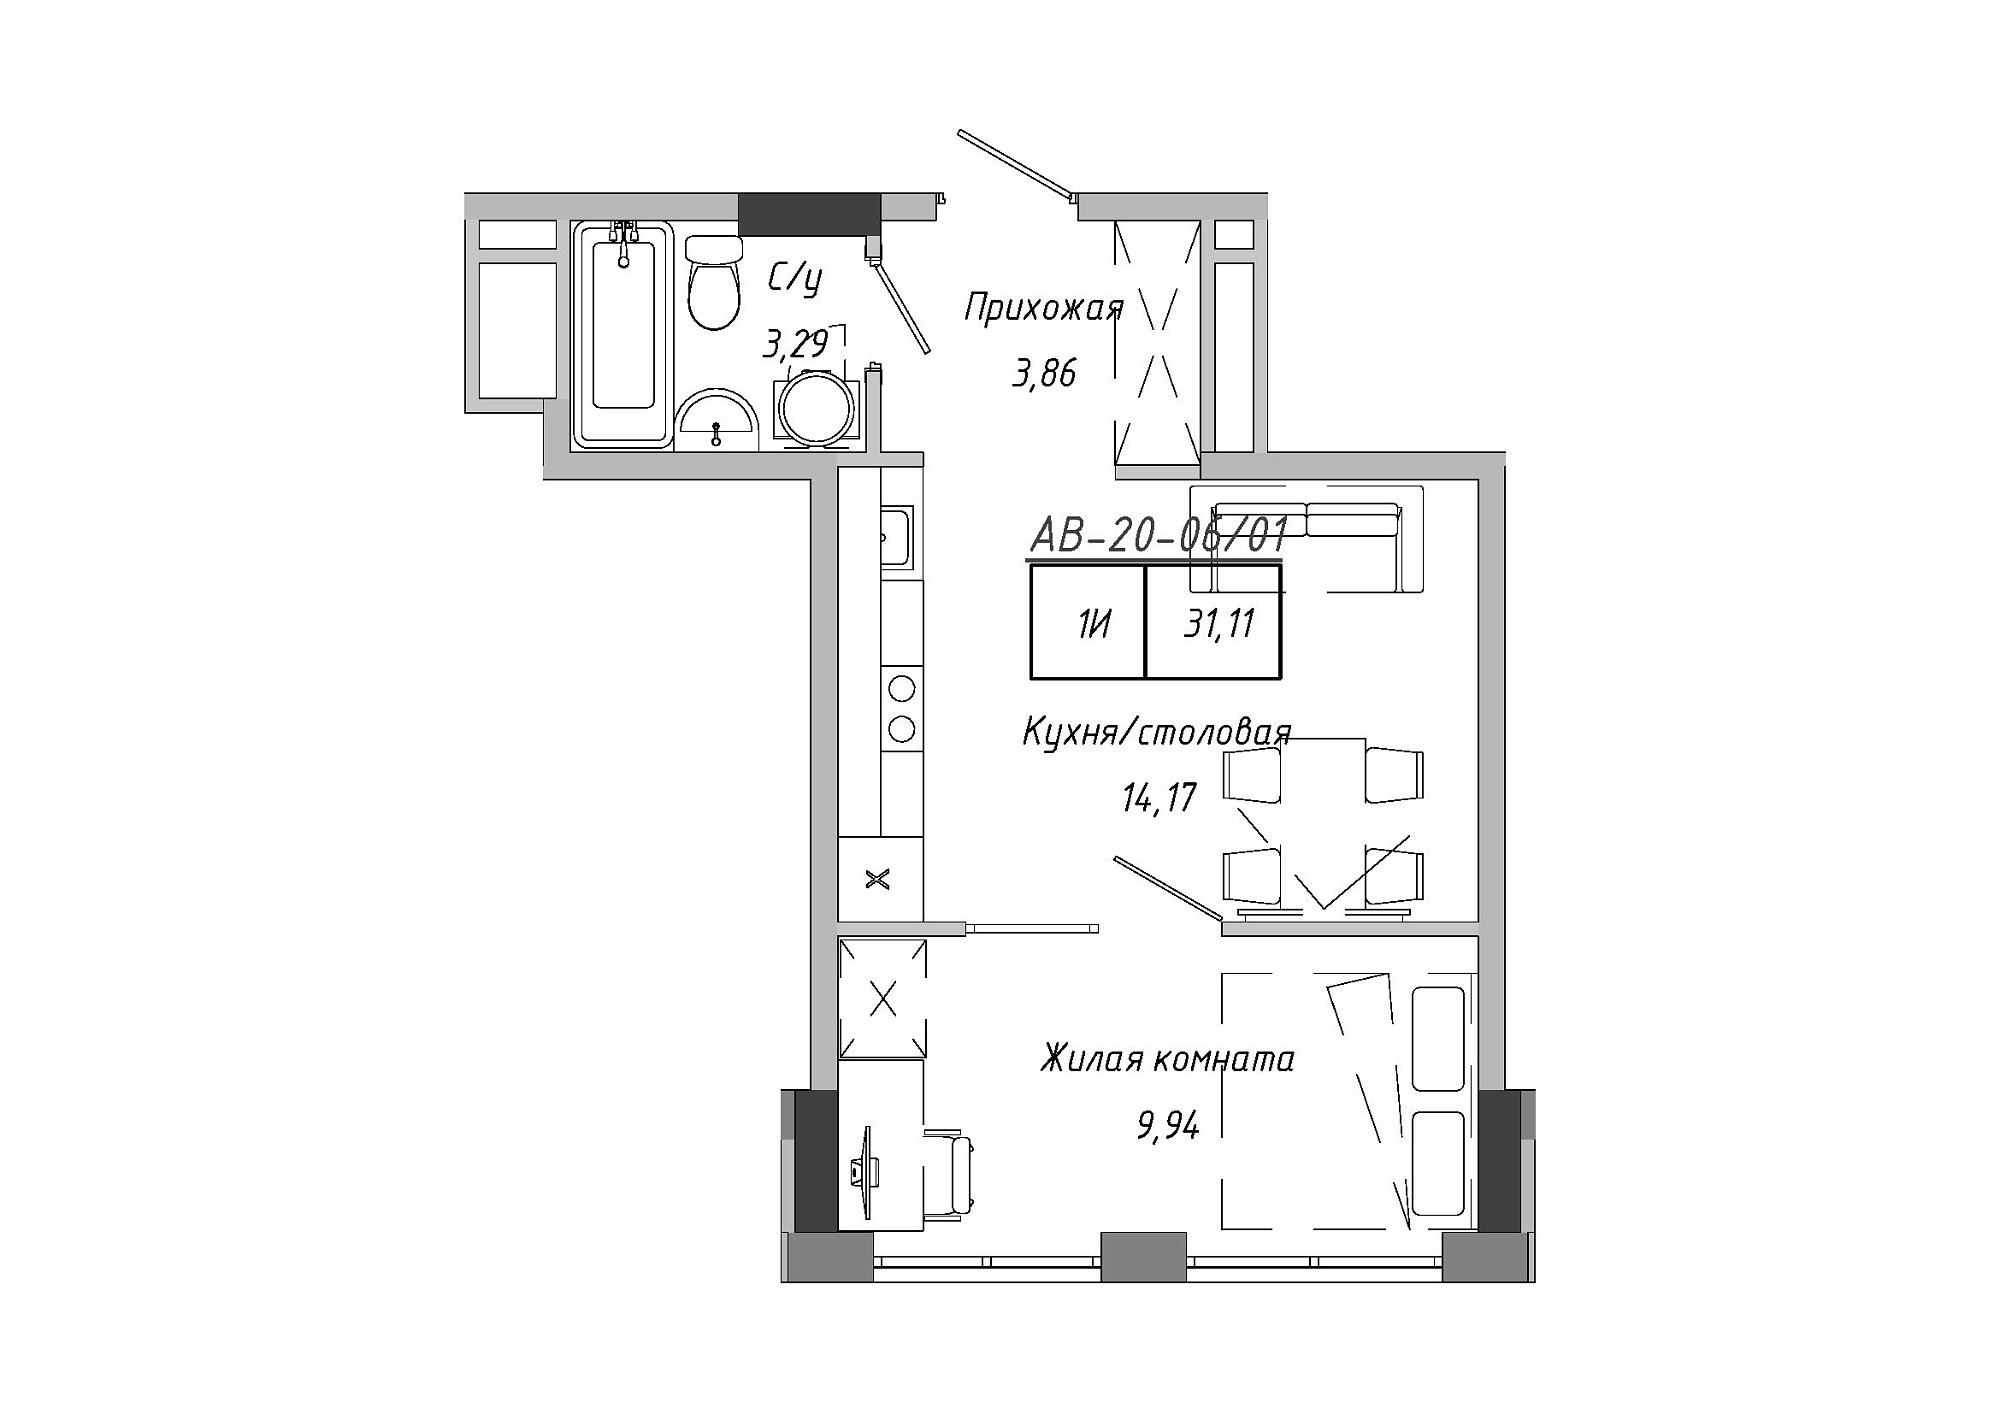 Планировка 1-к квартира площей 30.28м2, AB-20-06/00001.